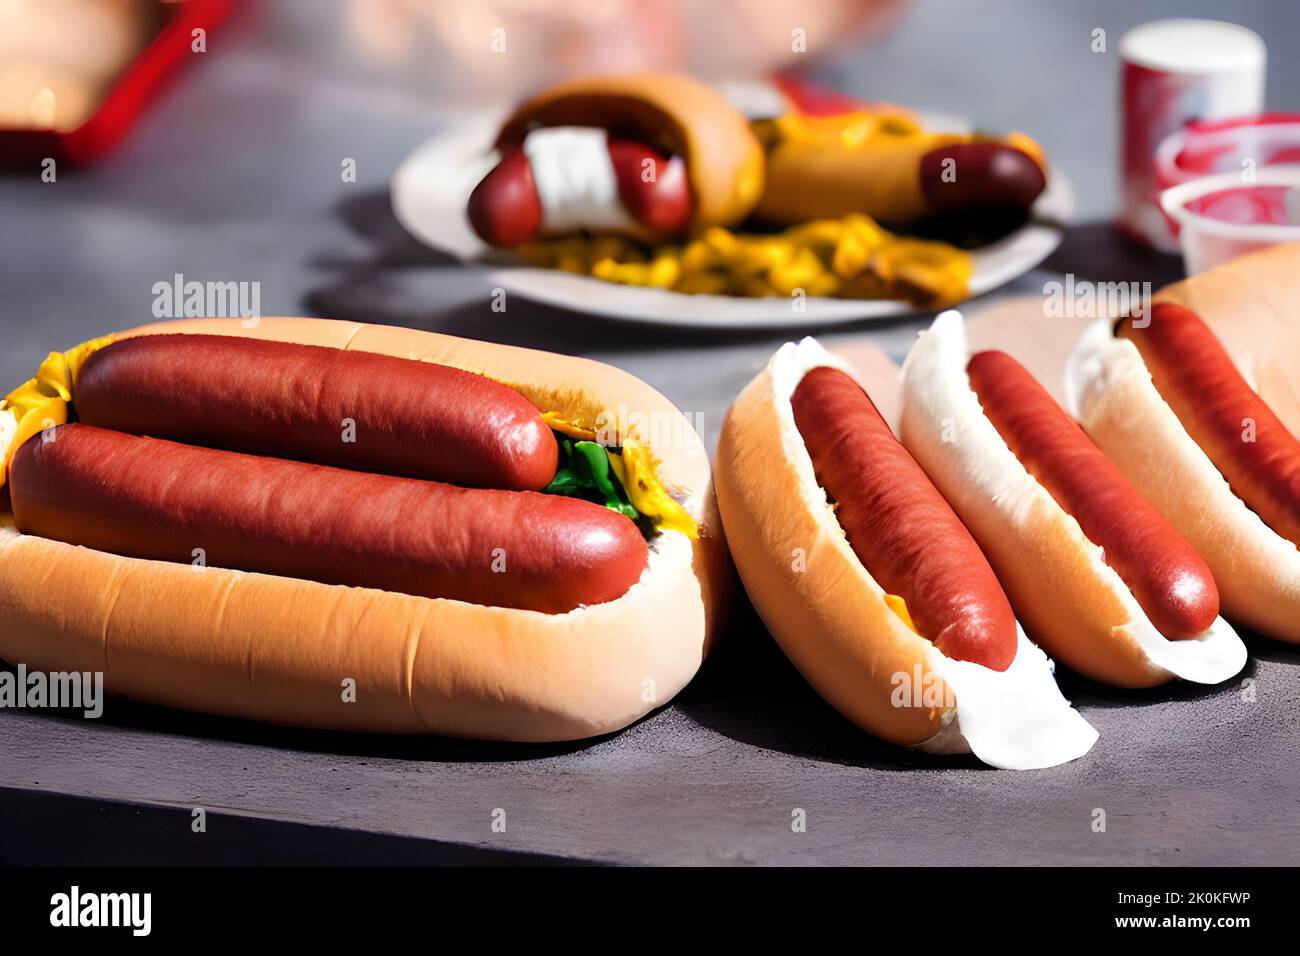 Un gros plan de hot dogs avec ketchup et moutarde Banque D'Images